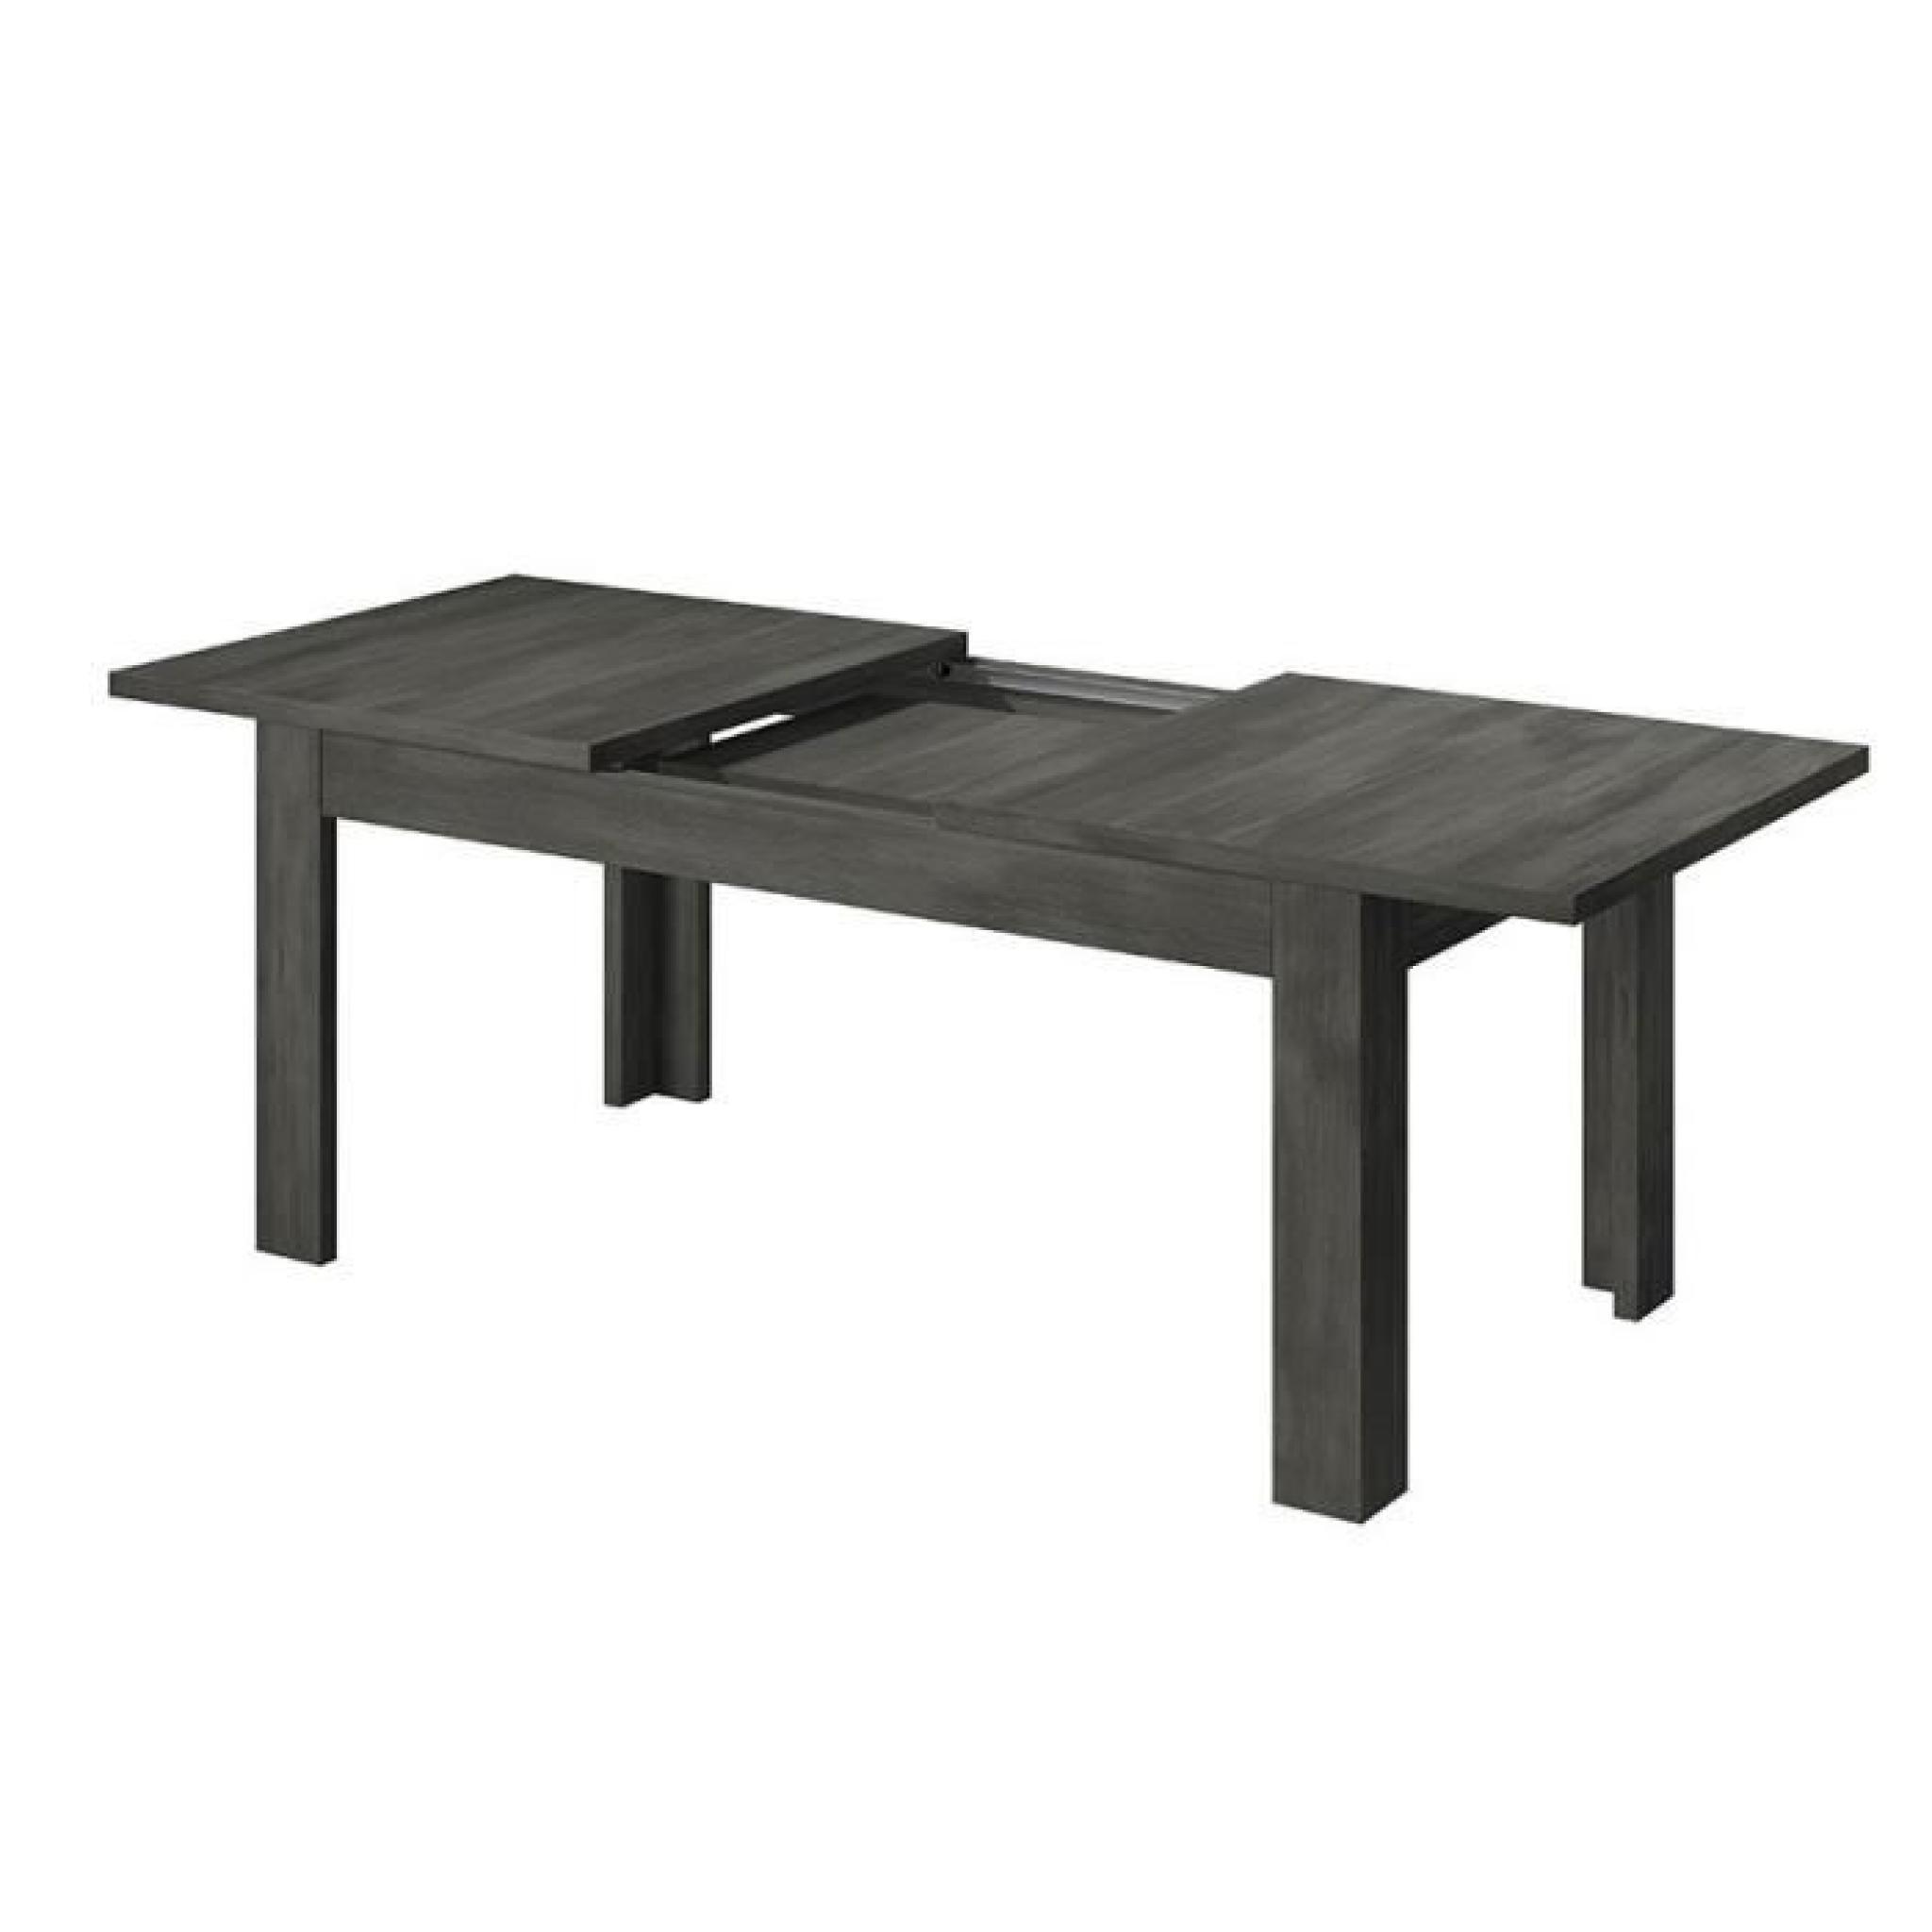 . Table coloris chêne noir Ally extensible 170-220 cm. pas cher